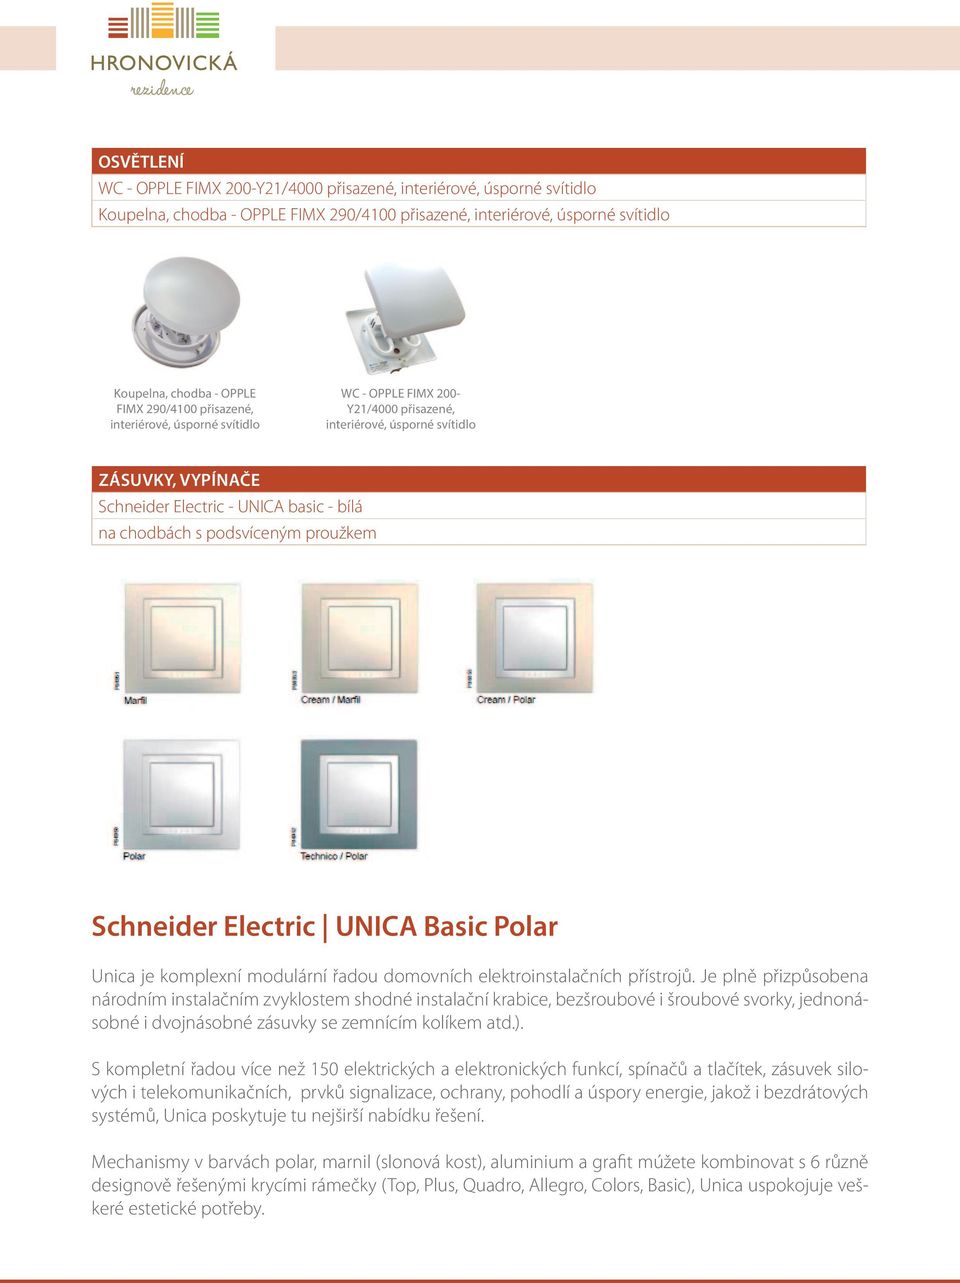 proužkem Schneider Electric UNICA Basic Polar Unica je komplexní modulární řadou domovních elektroinstalačních přístrojů.